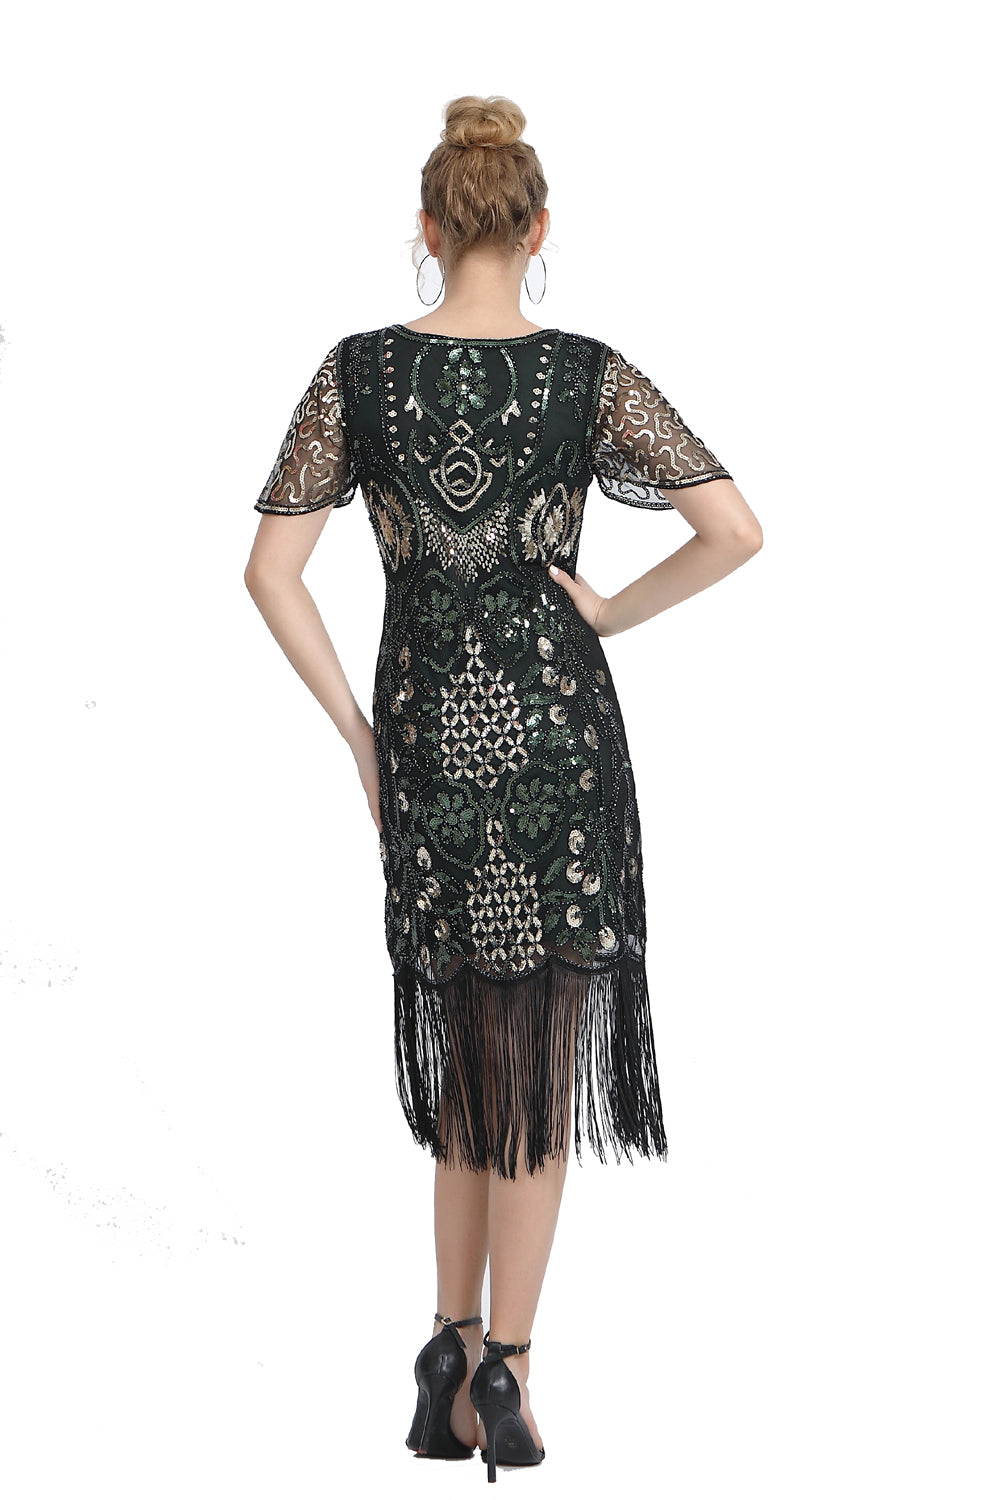 Sequin Fringe Skirt Dress 1920s Retro Fringe Skirt Party Banquet Dress Festival Evening Dress